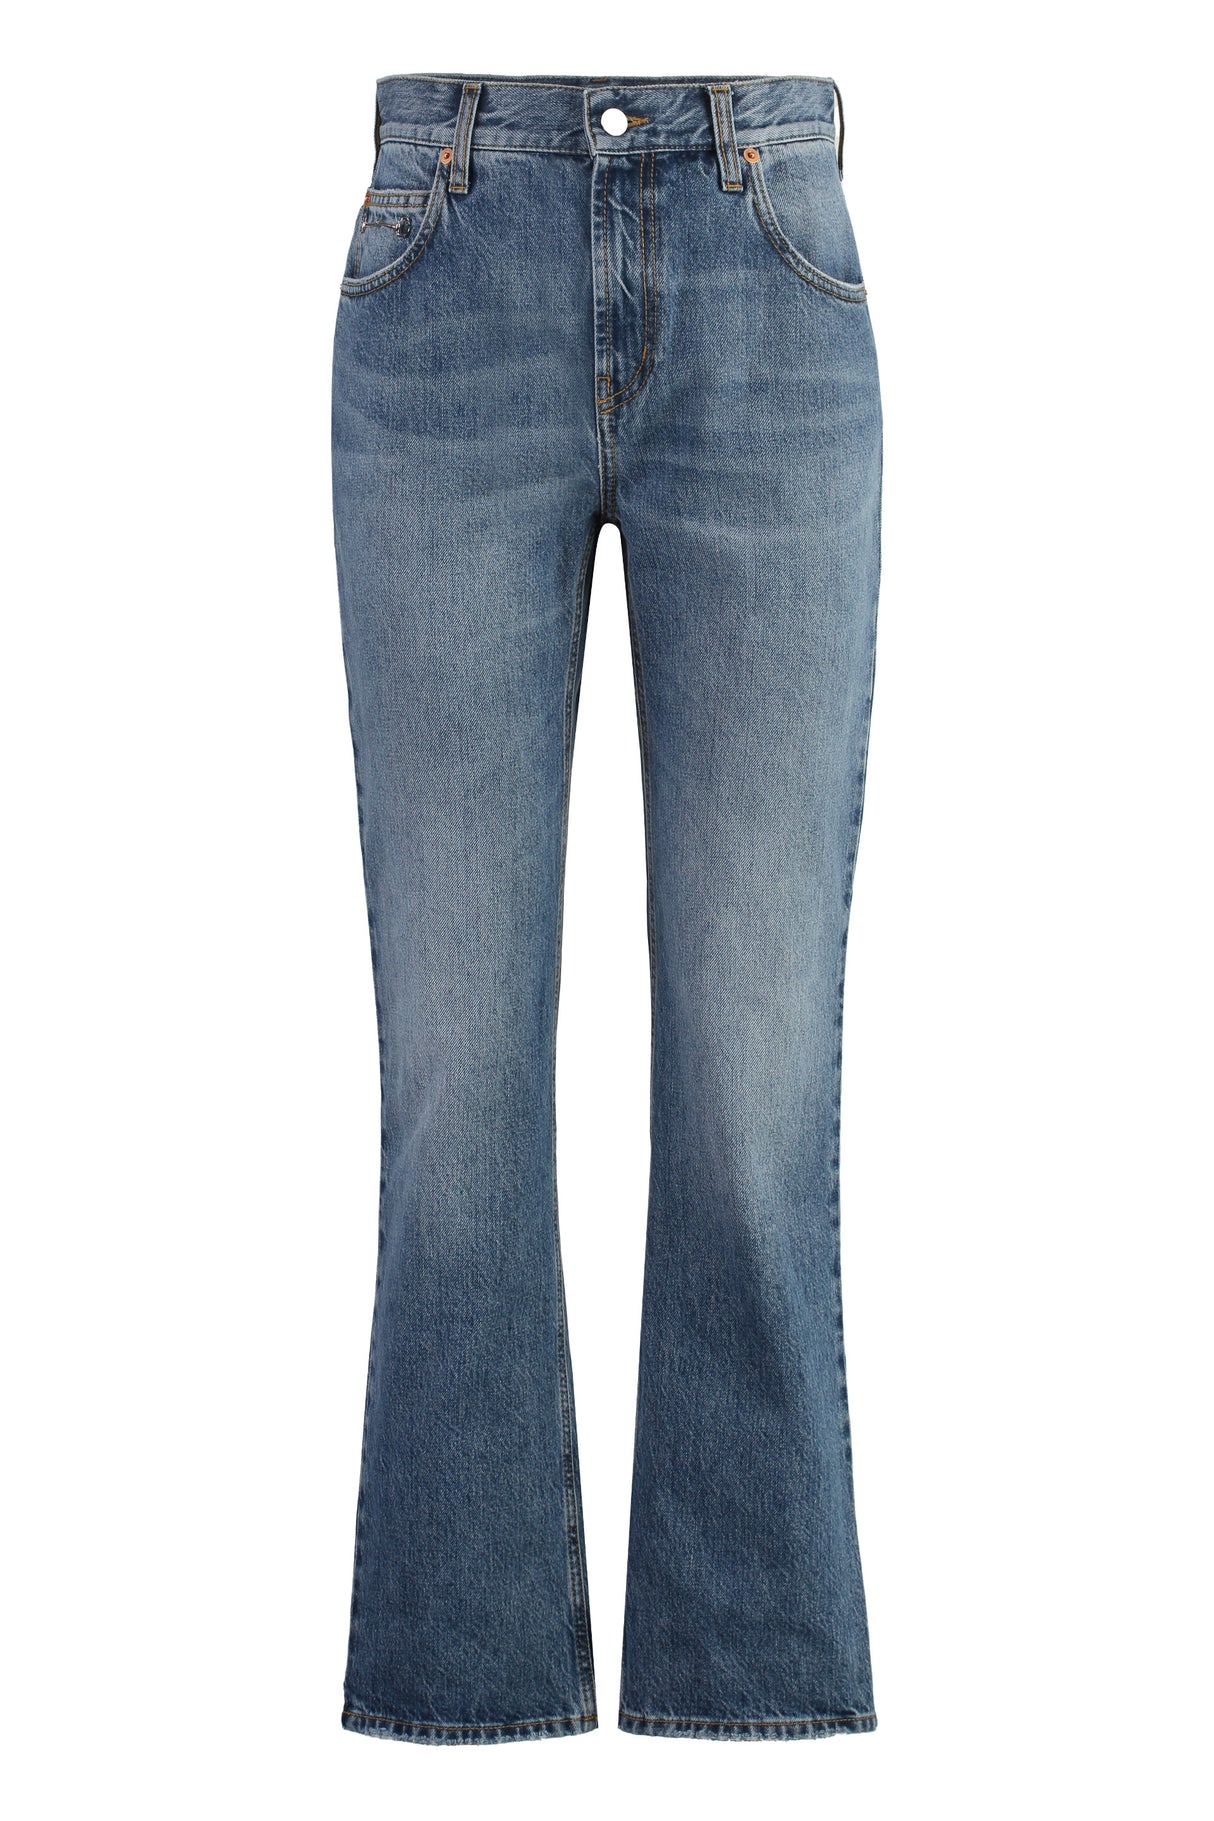 Quần jeans ống slim 5 túi màu xanh cổ điển cho phụ nữ